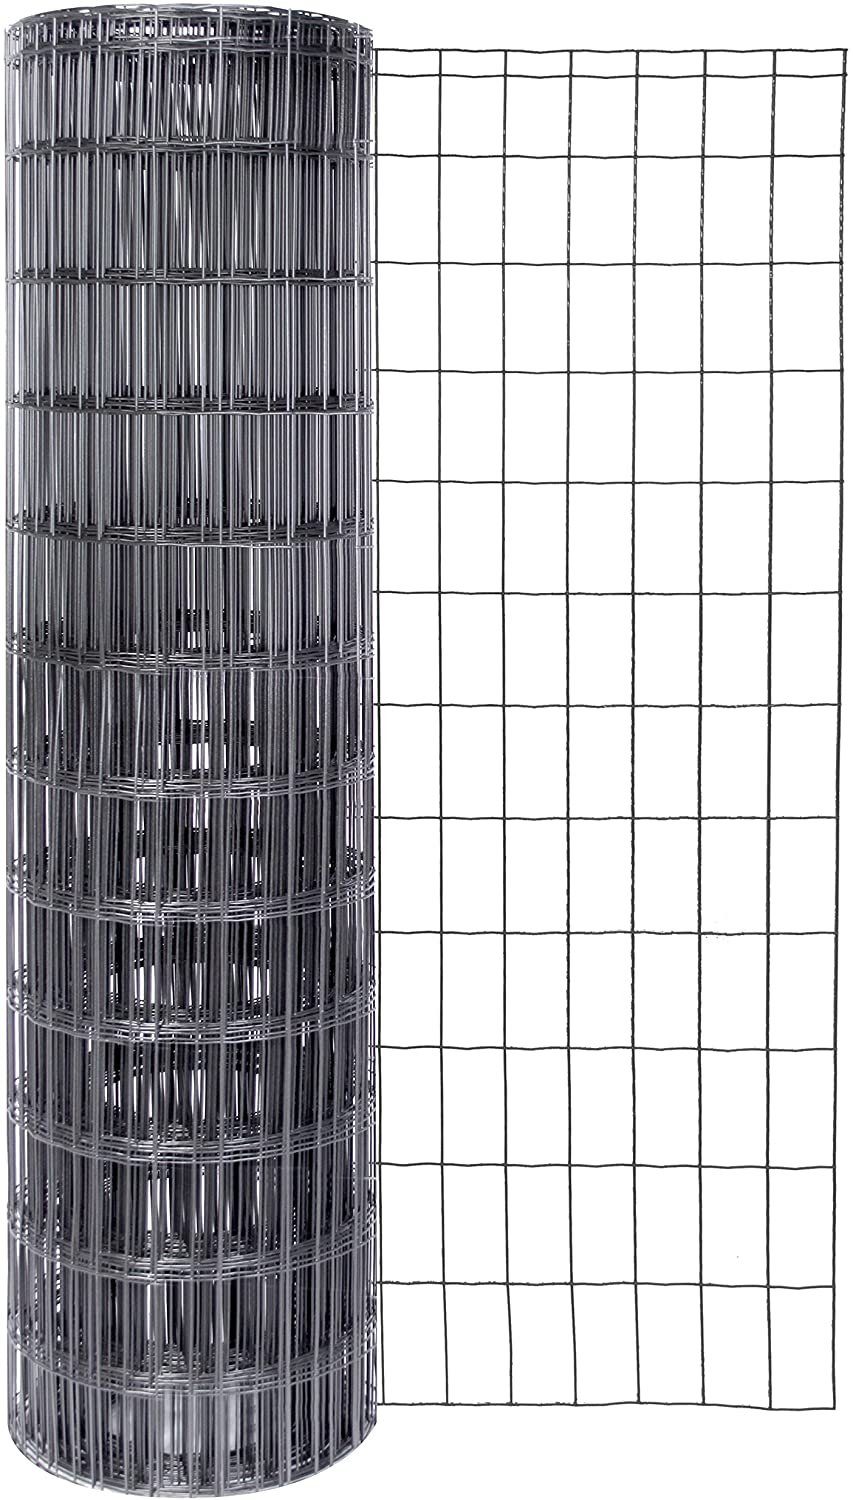 Alberts Schweißgitter Schweißgitter Fix-Clip Pro®, Höhe 81 cm, Länge 25 m, anthrazit-metallic